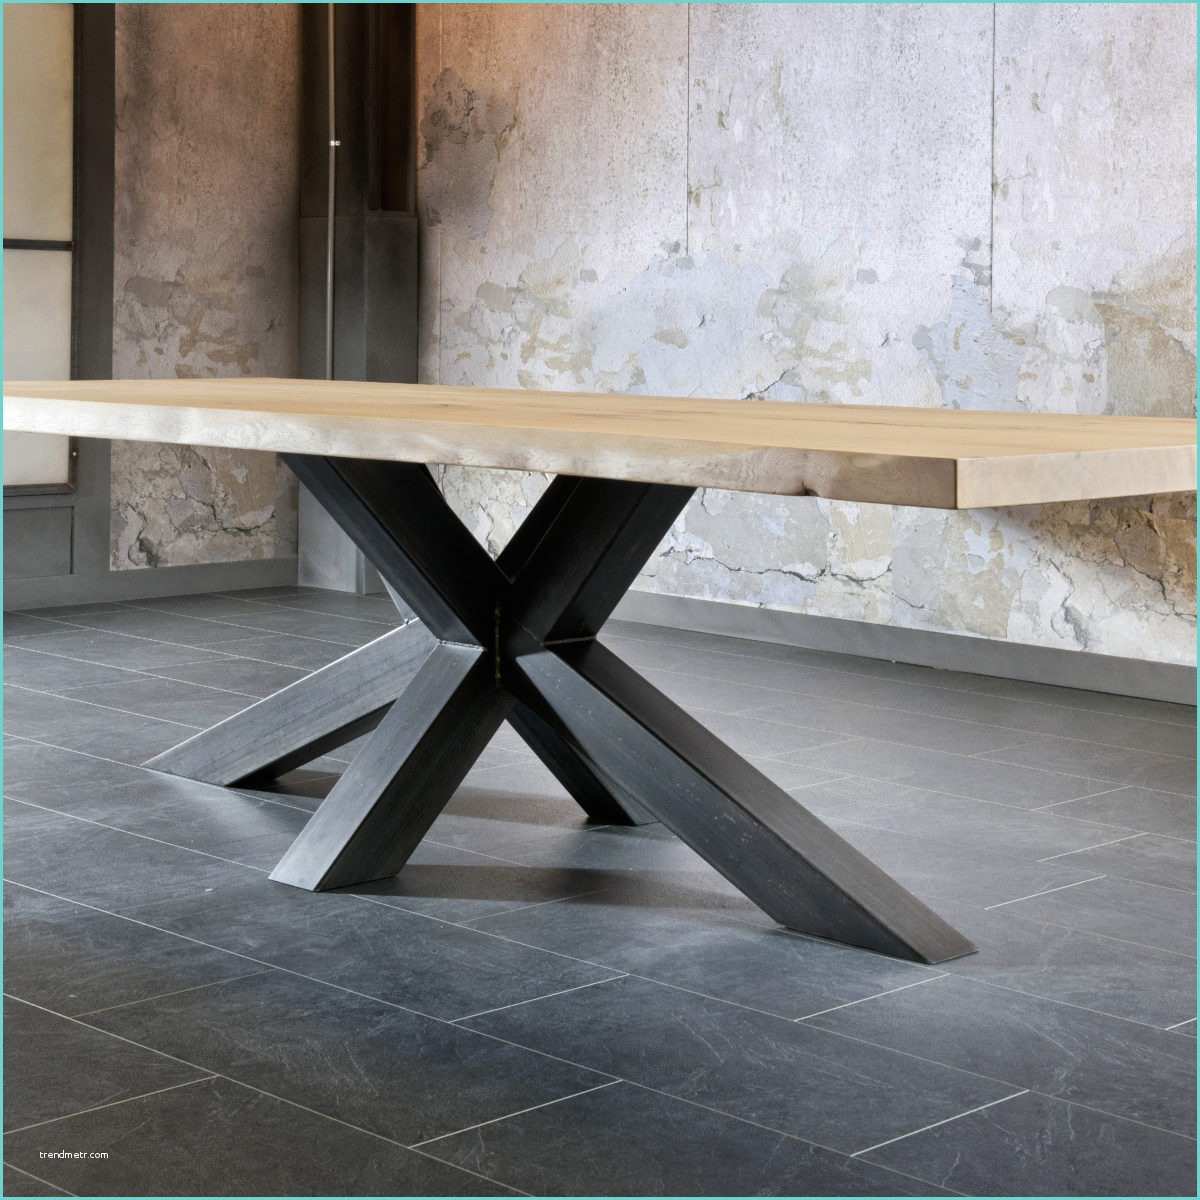 Pieds De Table Metal Design Salle A Manger Table Pied Metal Plateau Chene Industriel